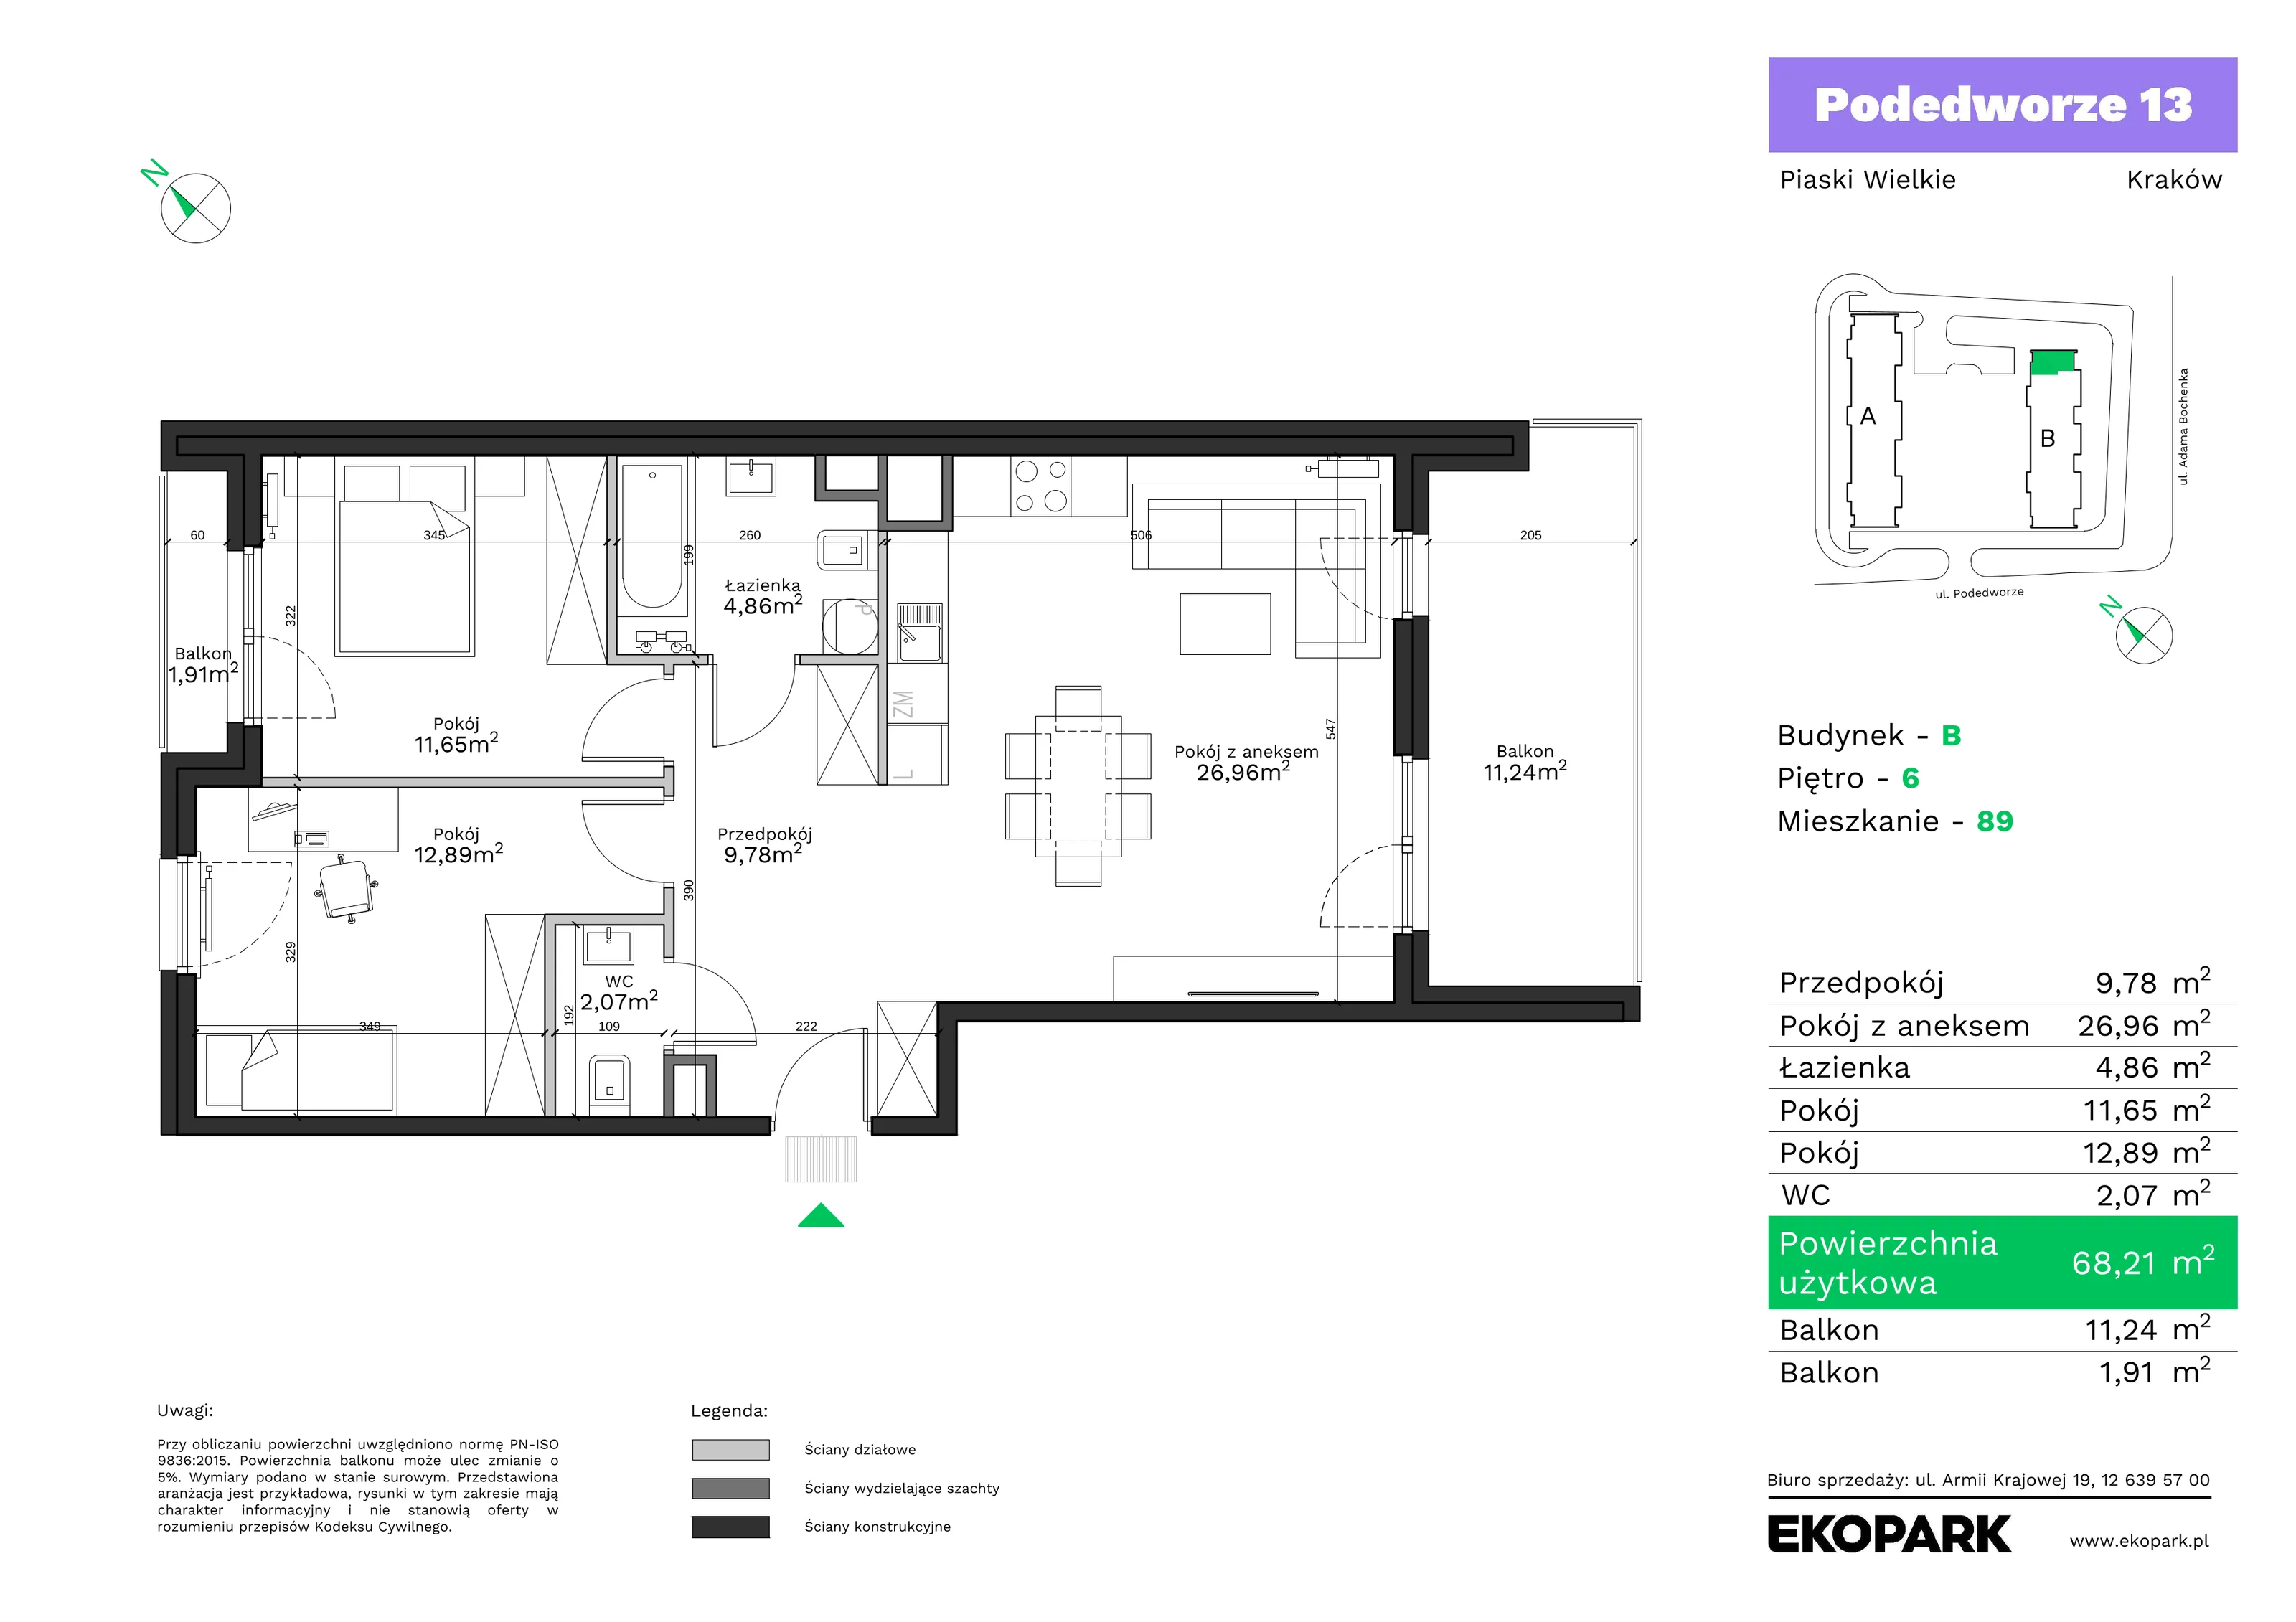 Mieszkanie 68,21 m², piętro 6, oferta nr B89, Podedworze 13, Kraków, Podgórze Duchackie, Piaski Wielkie, ul. Podedworze 13